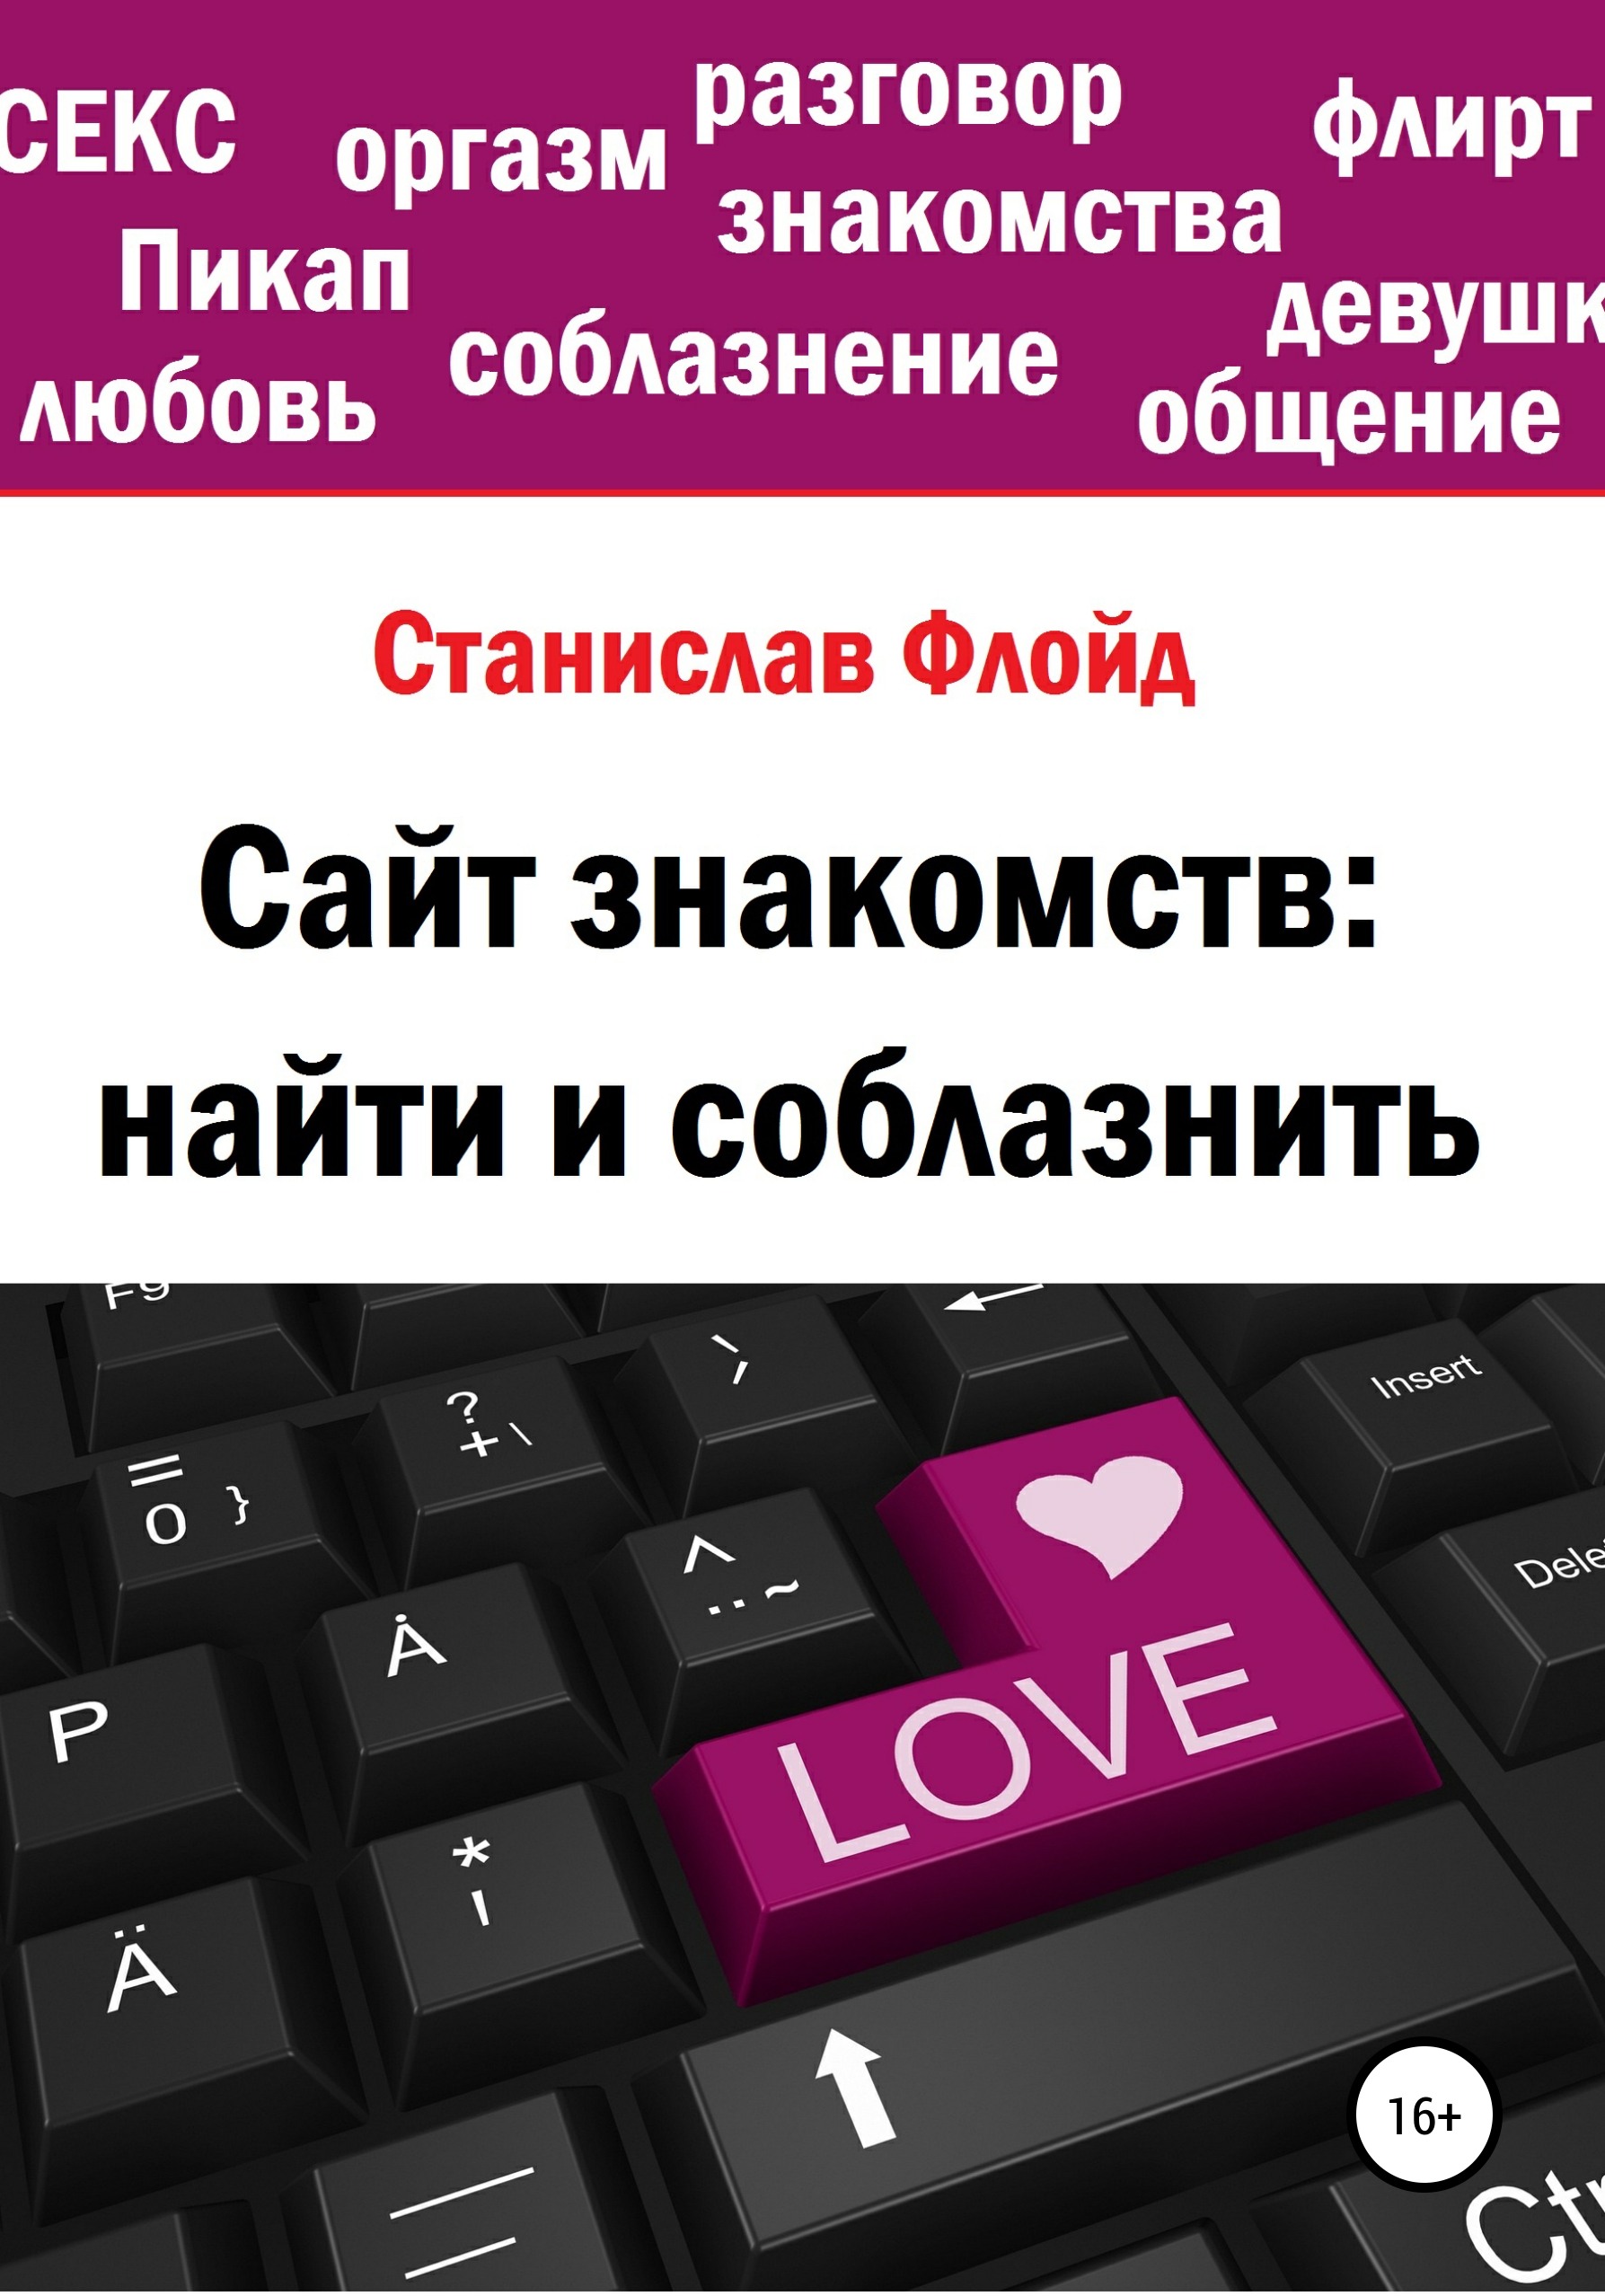 Знакомства в Москве. Бесплатный сайт знакомств онлайн – LinkYou